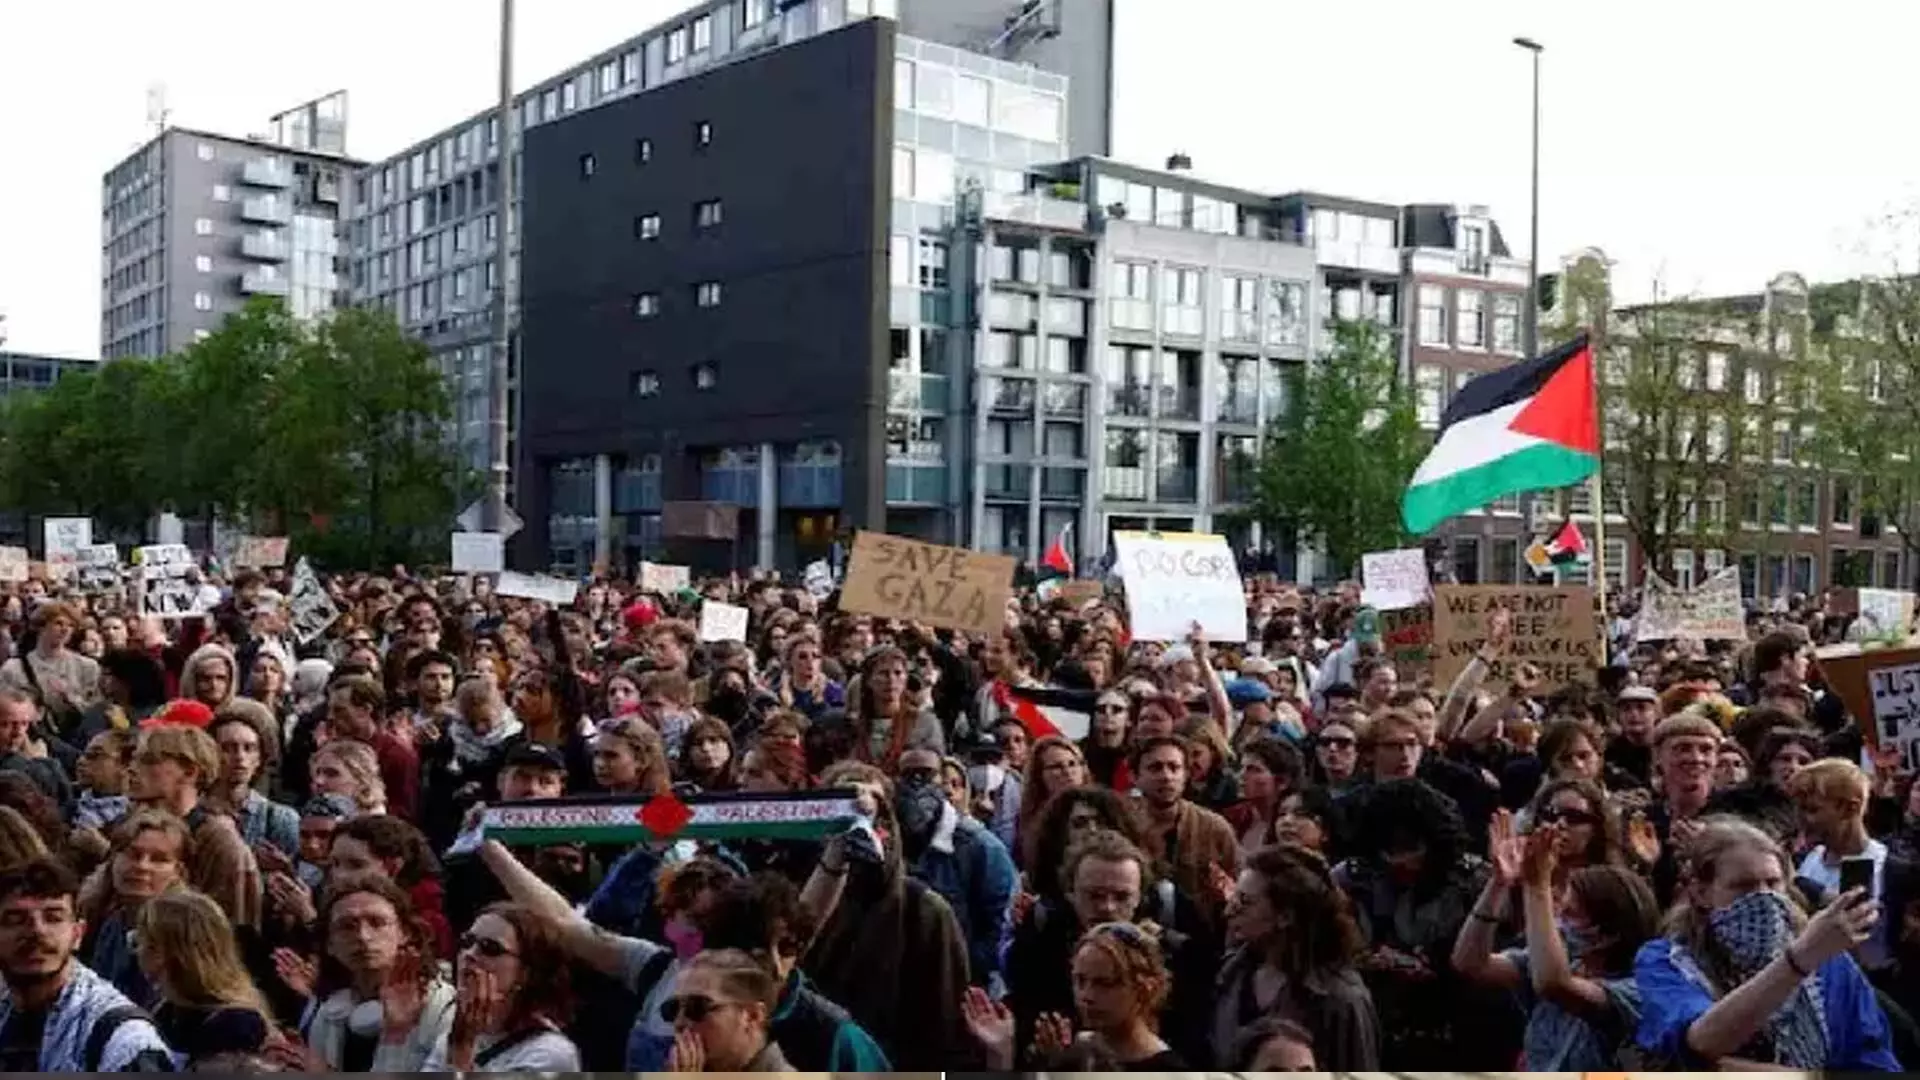 फिलिस्तीन समर्थक प्रदर्शनकारियों ने रात भर एम्स्टर्डम विश्वविद्यालय पर कब्जा कर लिया